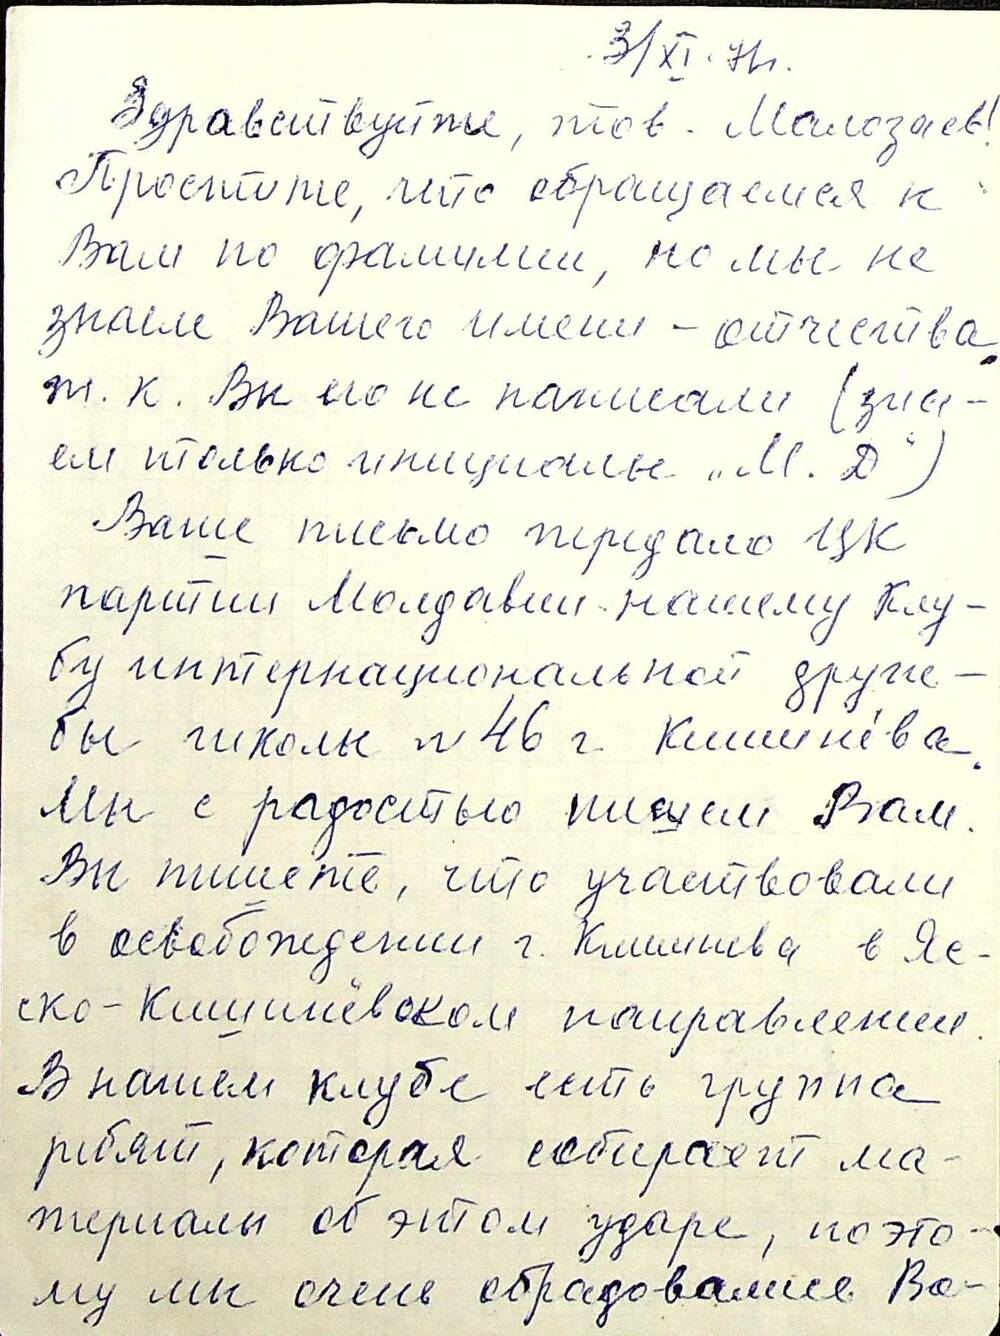 Письмо от 03.11.1971 г. и поздравительная открытка с праздником октября от друзей клуба интернациональной дружбы № 46 г. Кишинева.